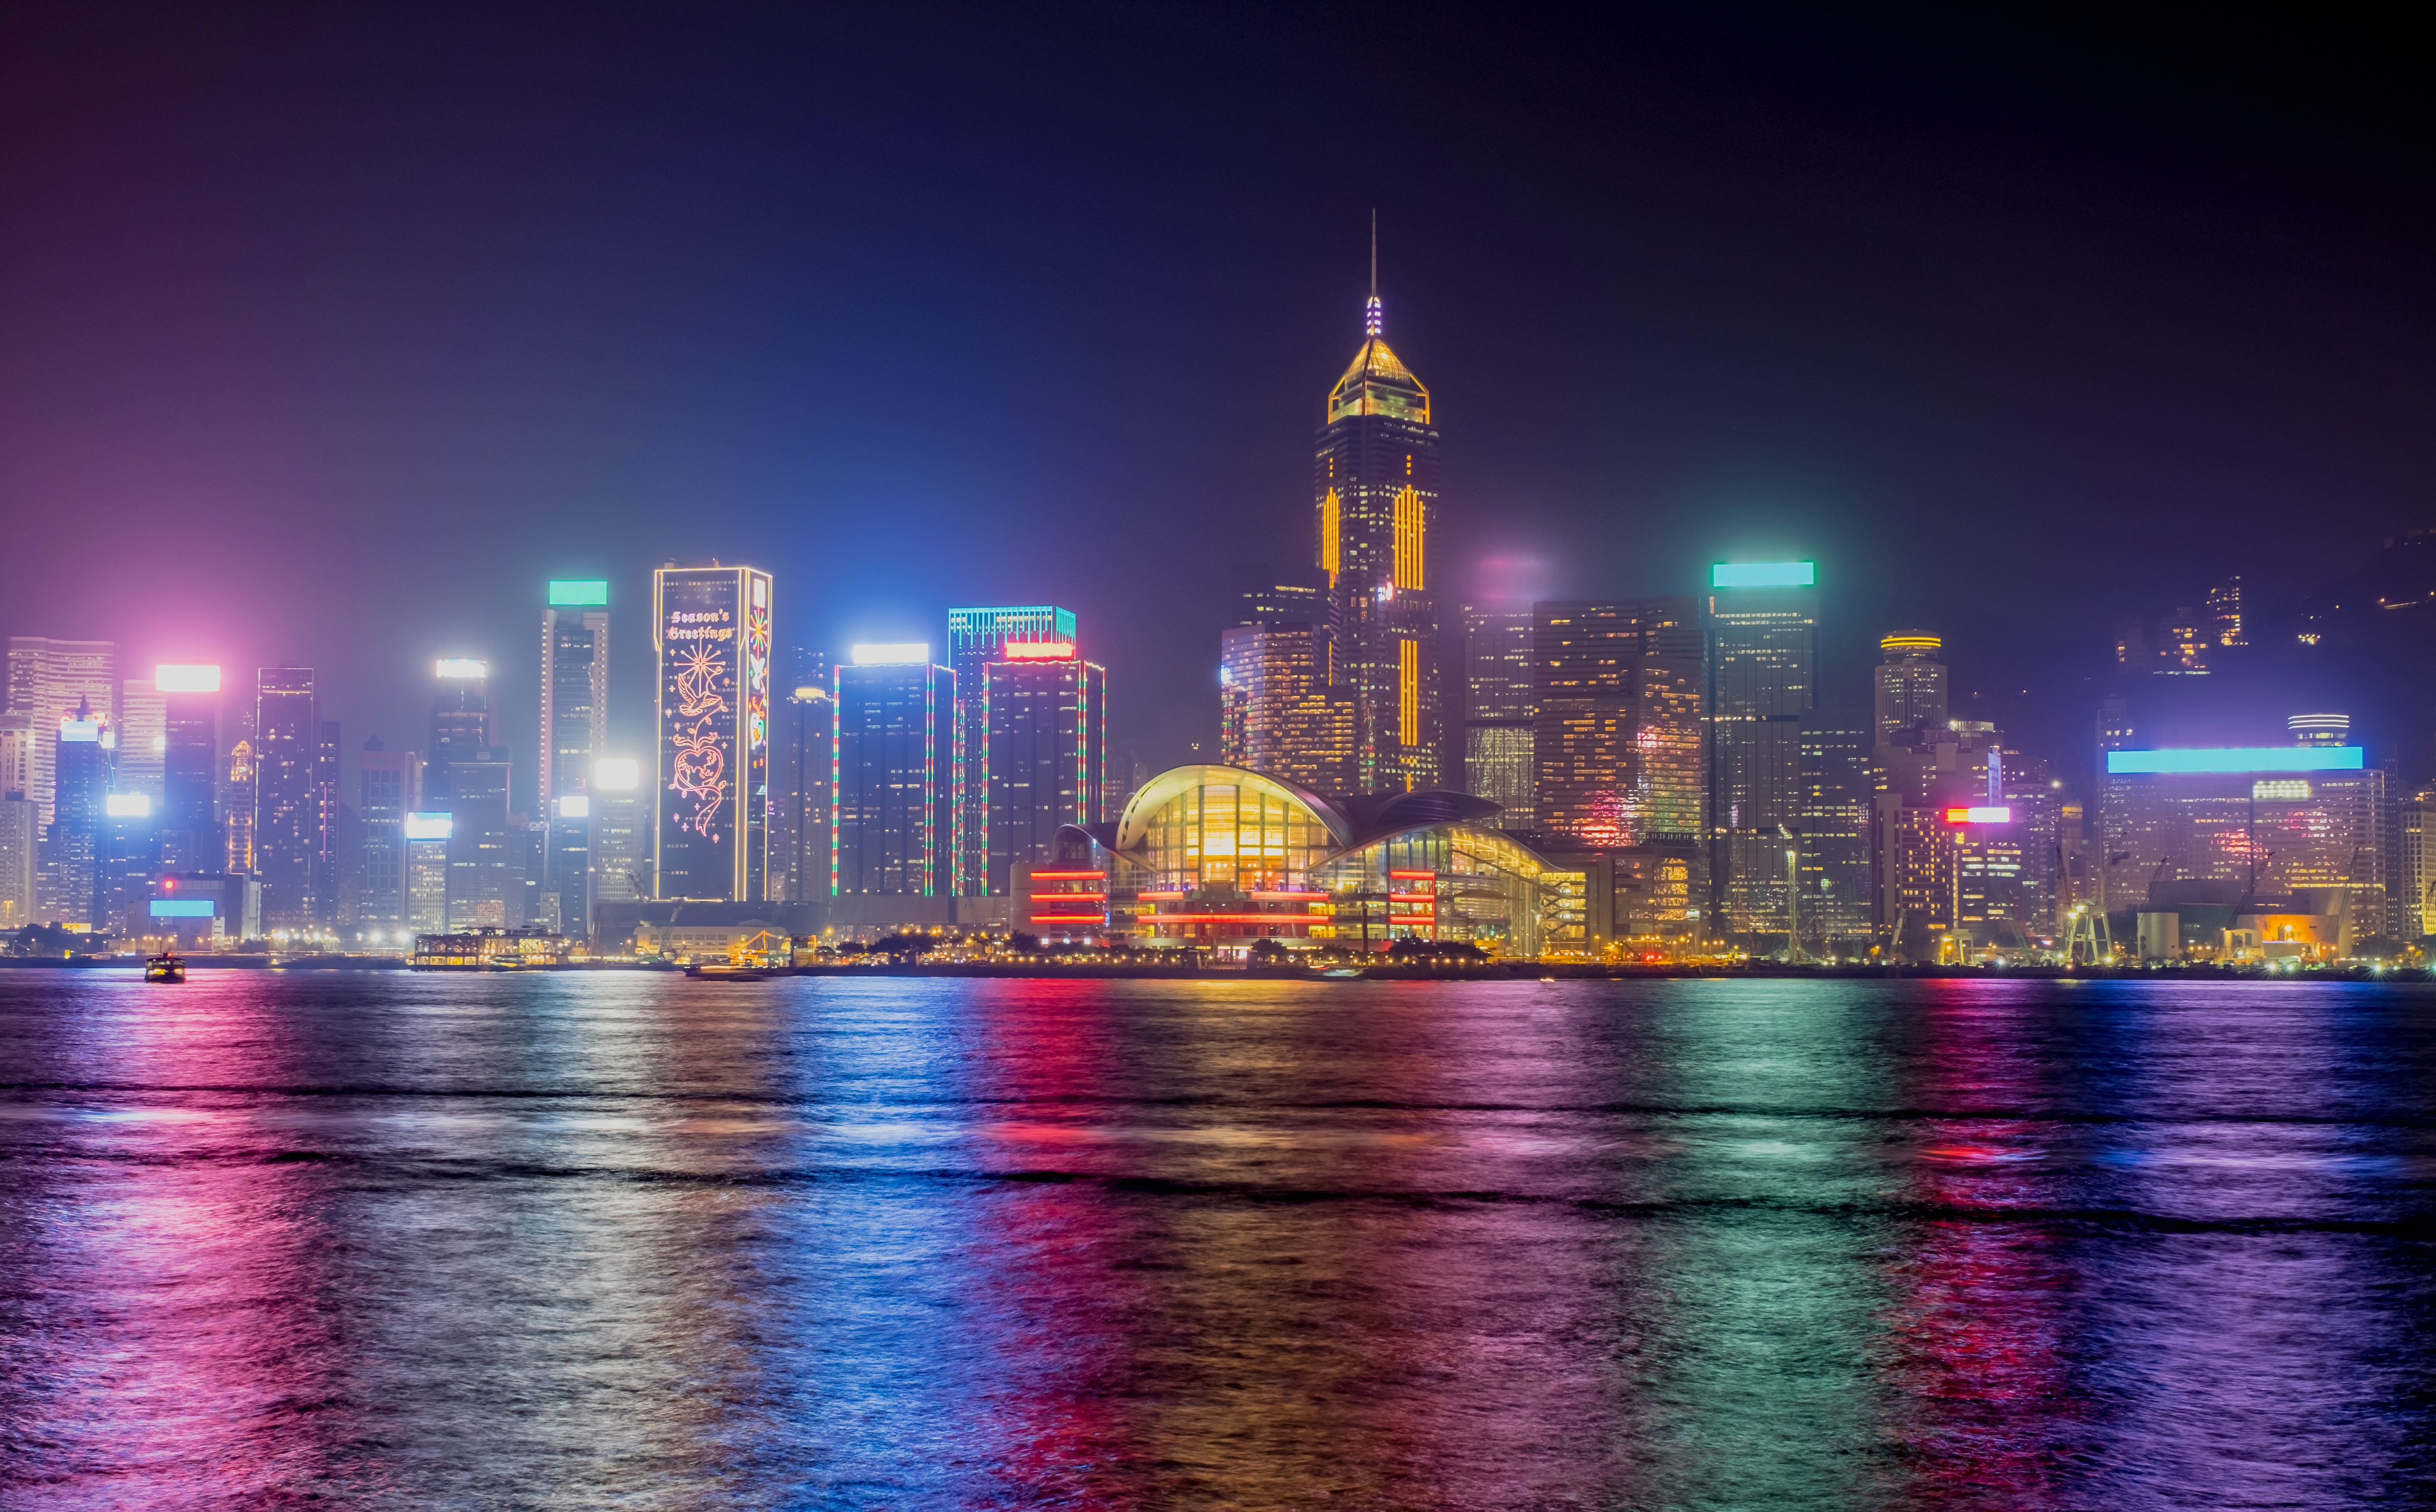 Hong Kong 4k Ultra HD Wallpaper. Background Imagex3039